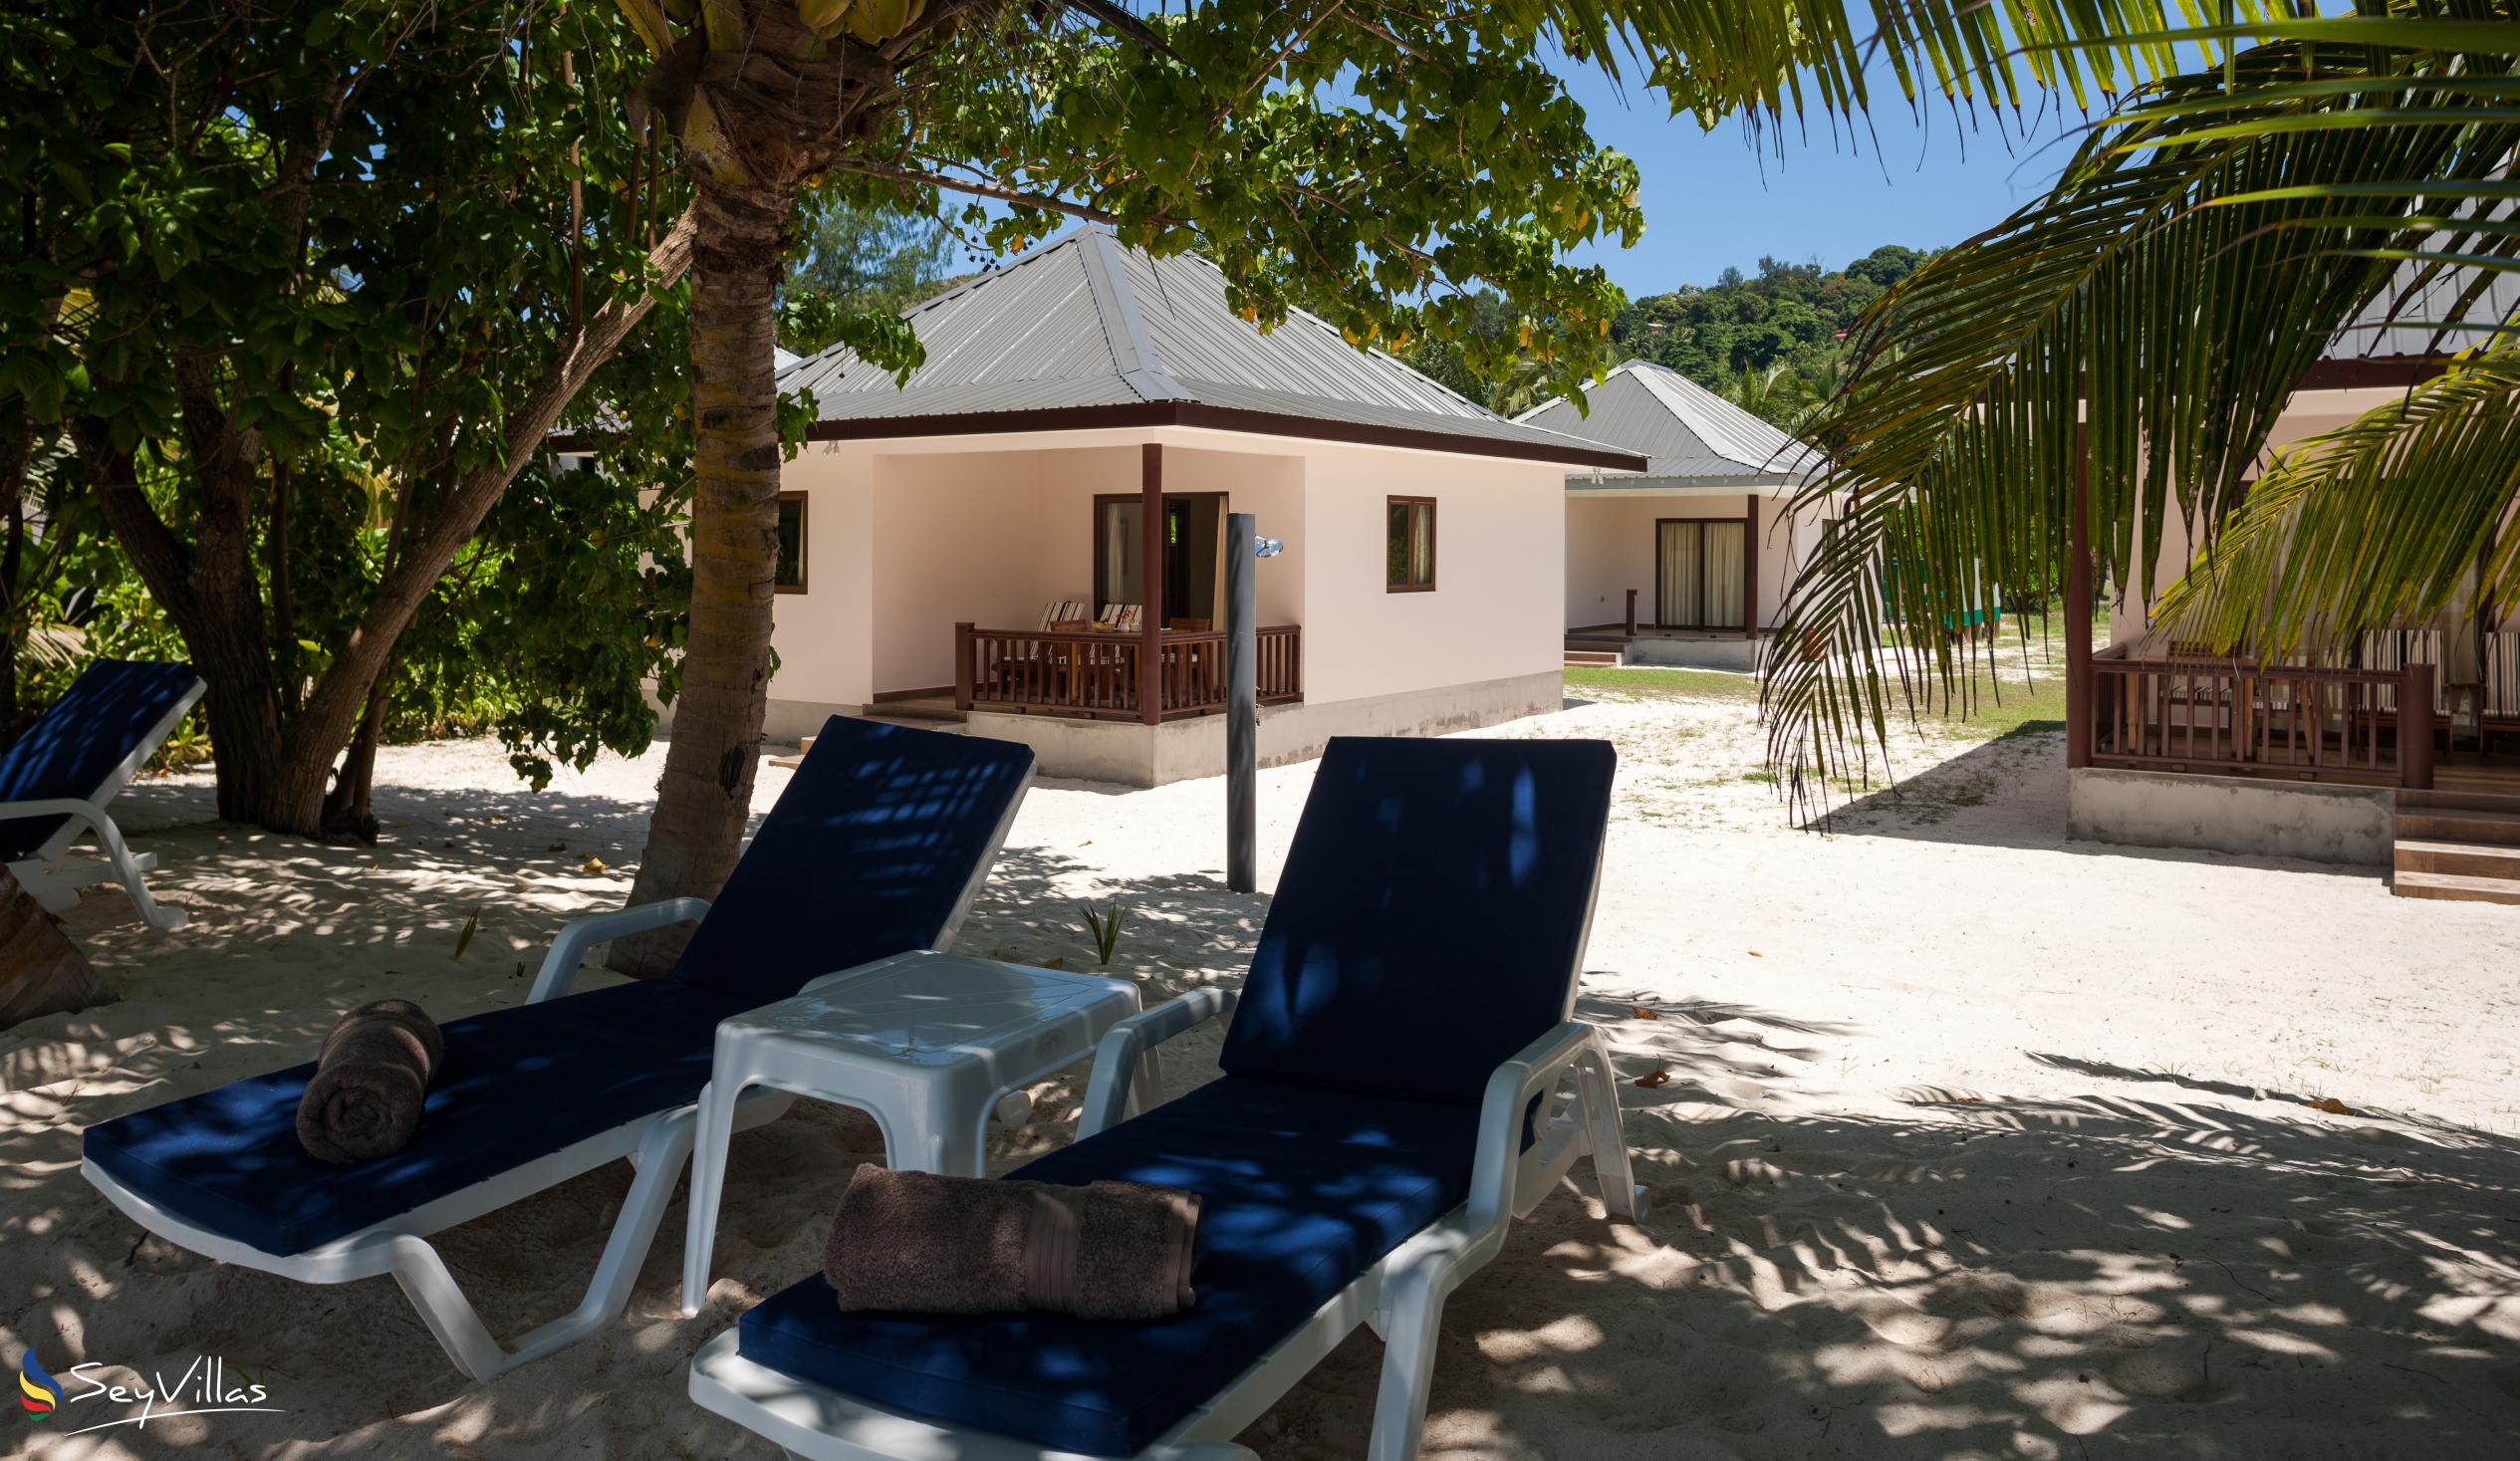 Foto 12: Villa Belle Plage - Aussenbereich - Praslin (Seychellen)